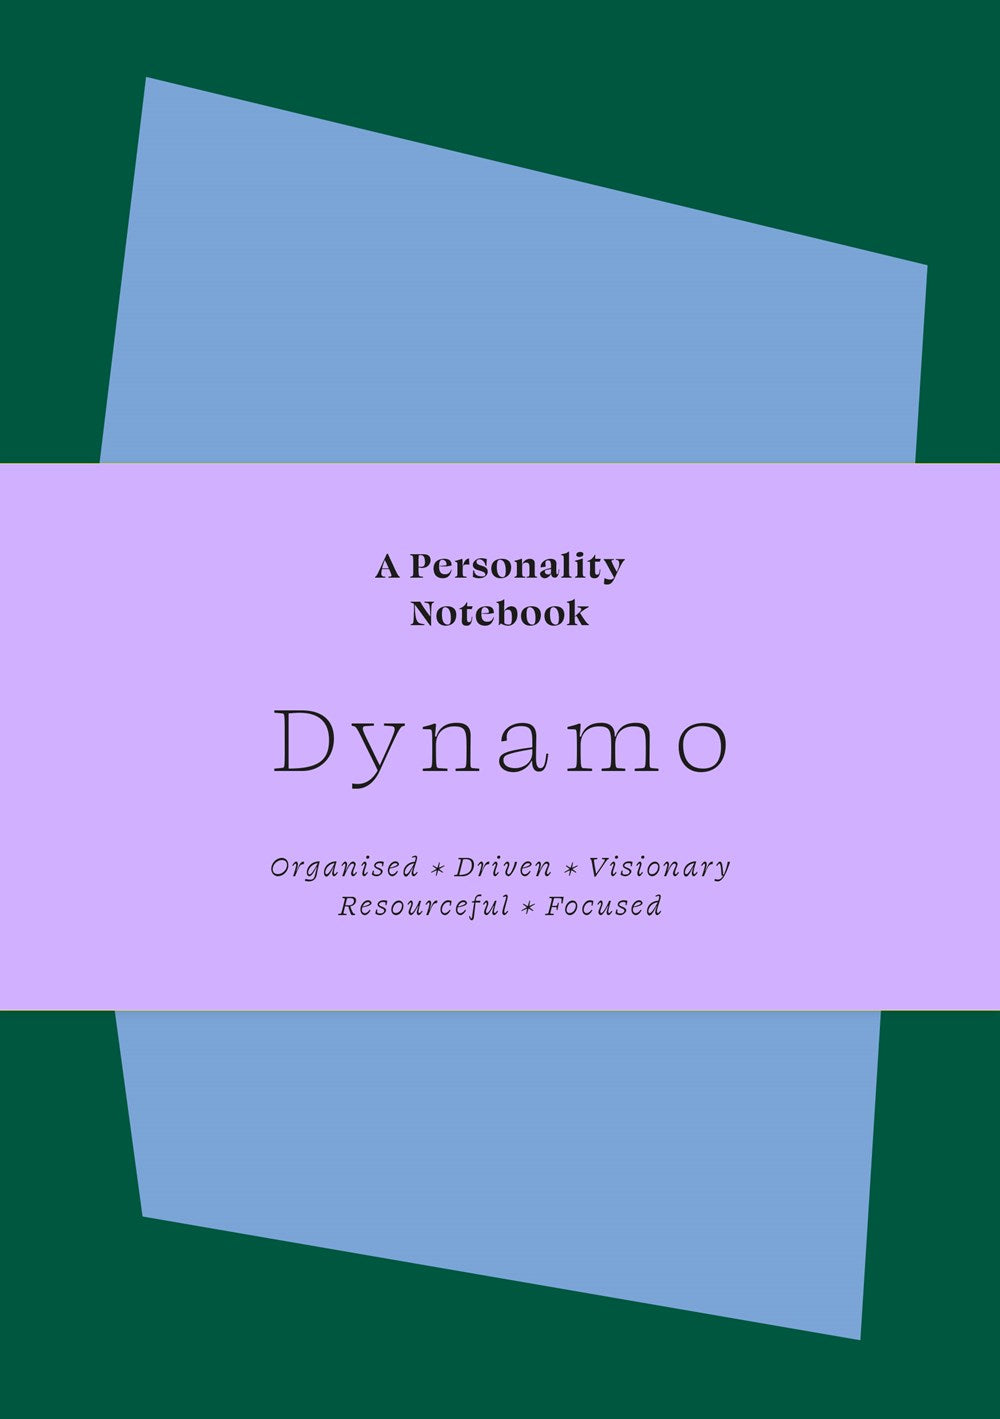 Dynano - Personality Notebooks